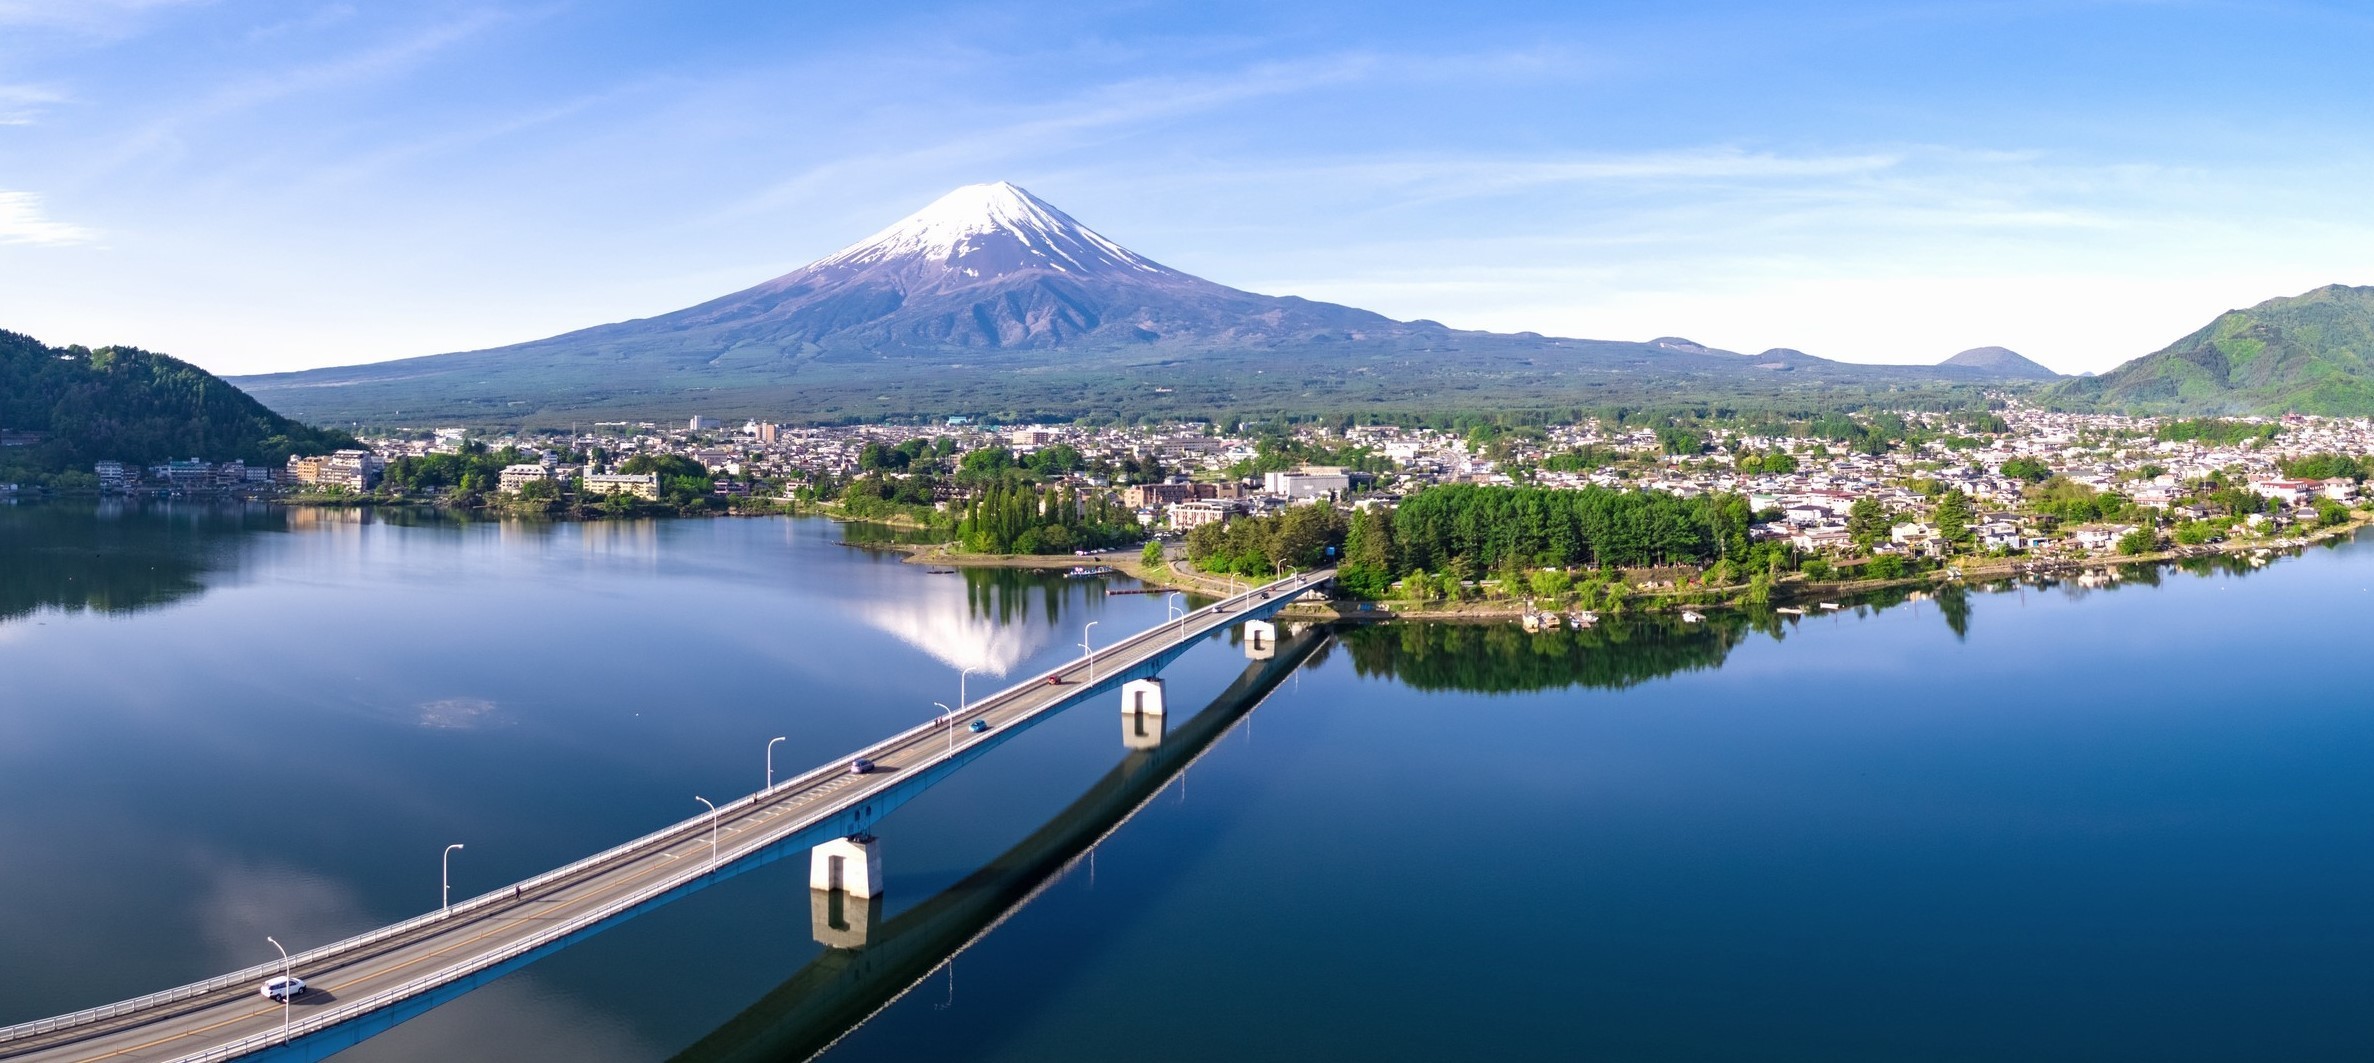 富士河口湖町、安心・安全な観光地づくりをめざして
「コロナワクチン接種割引キャンペーン」を開始